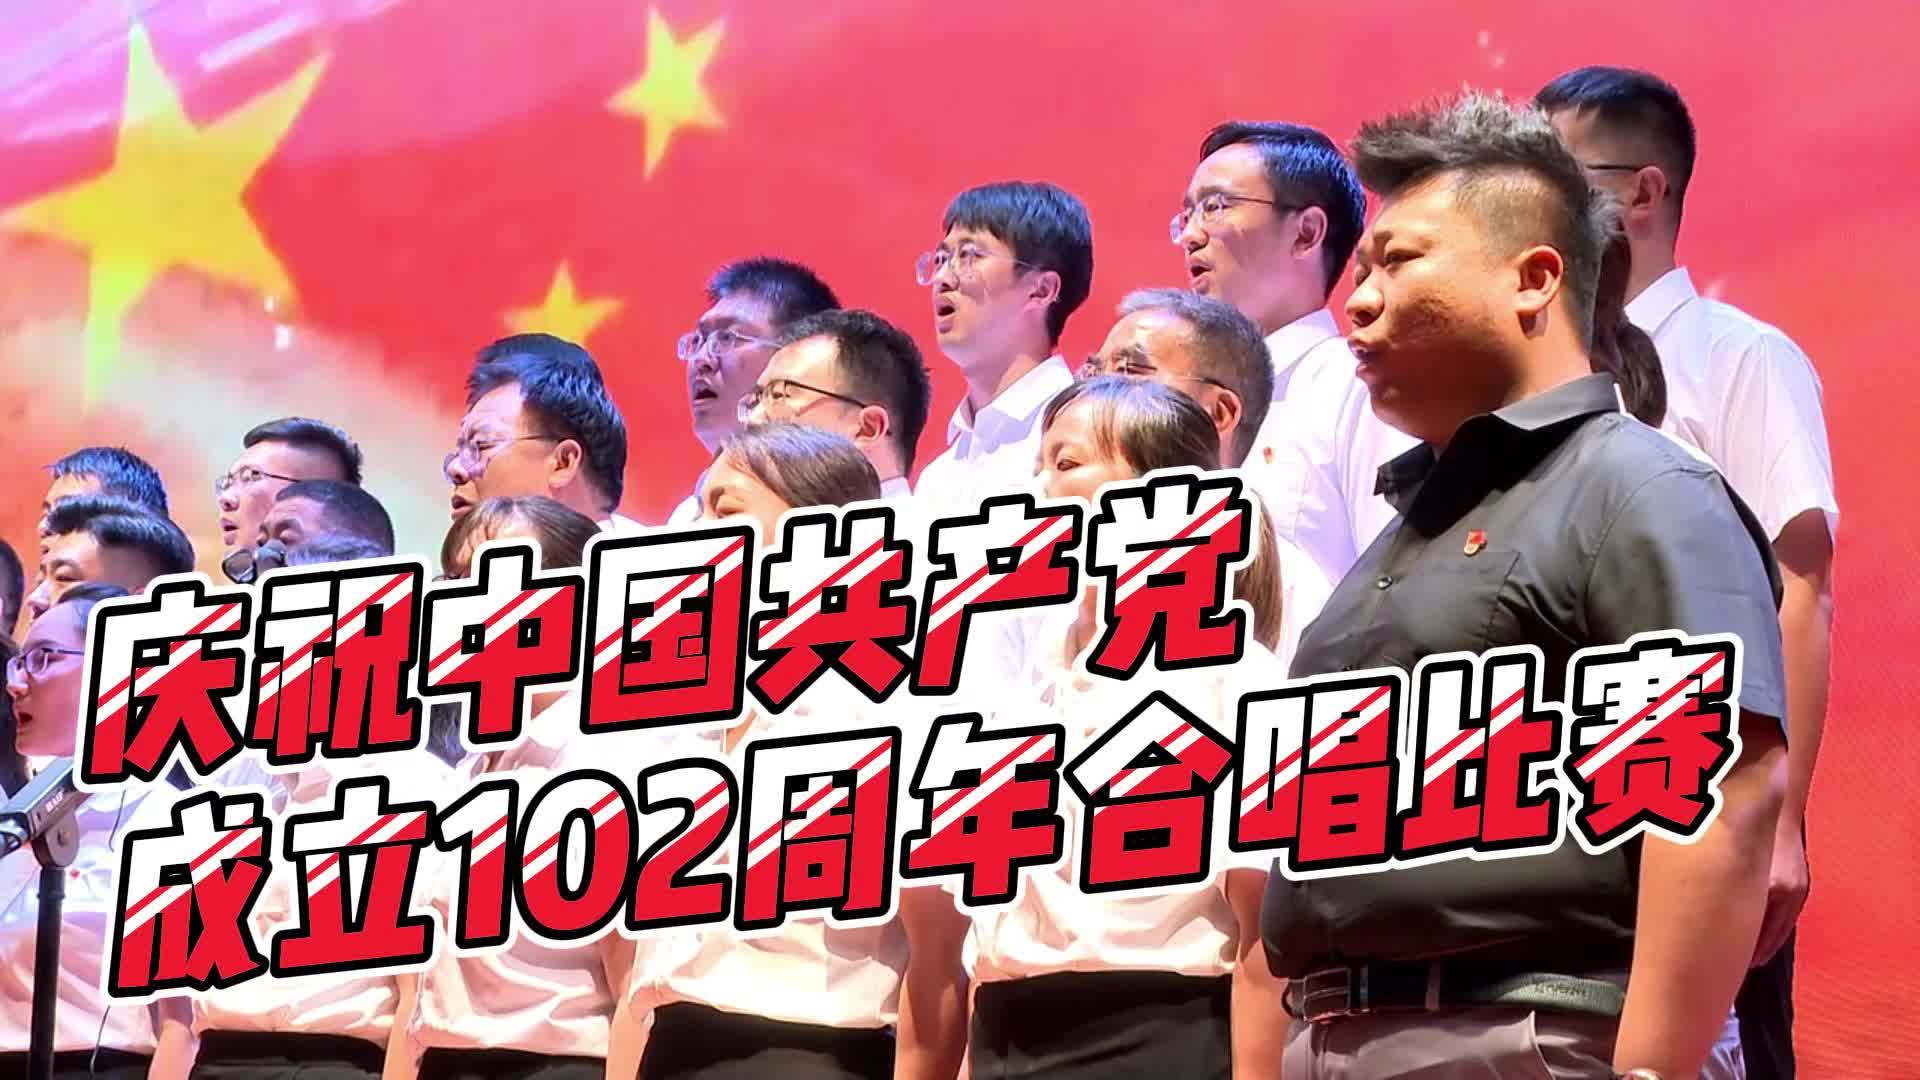 【邹视频·新闻】47秒 | 市人民医院举办庆祝中国共产党成立102周年合唱比赛